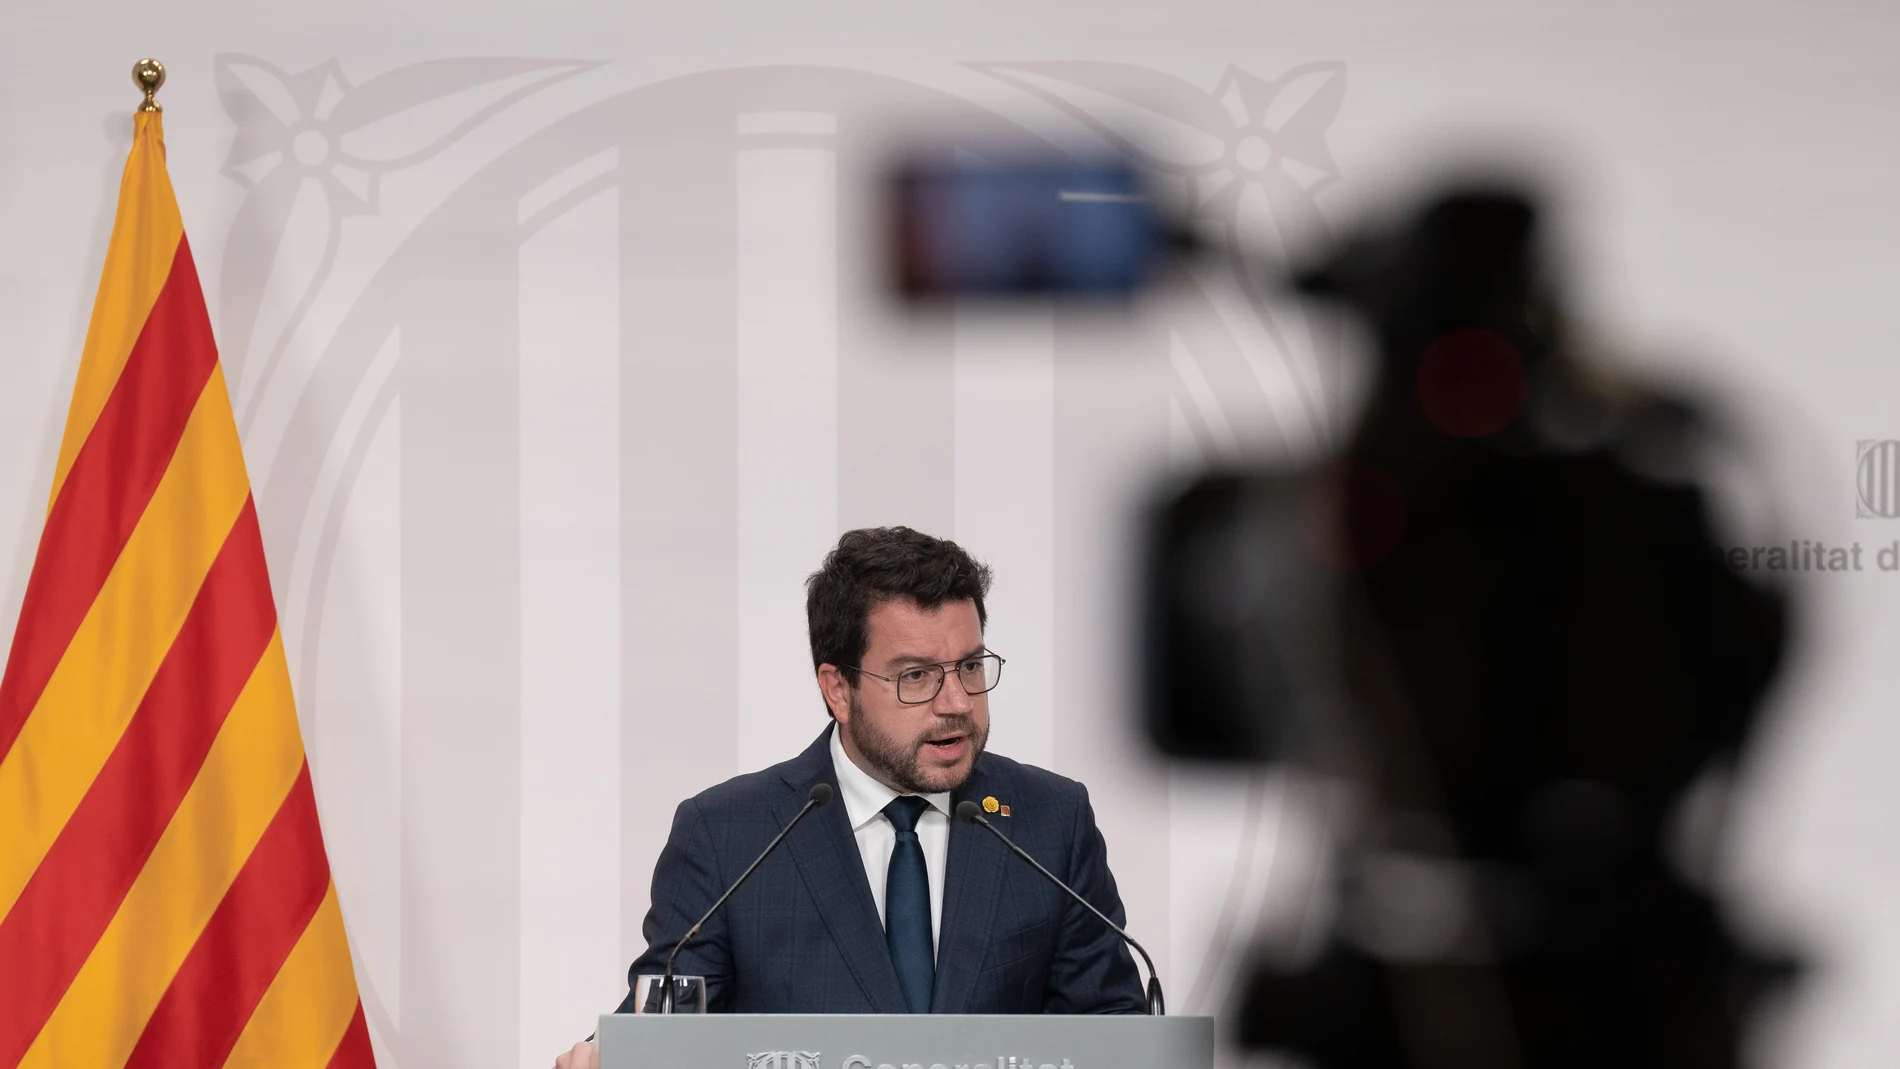 El president de la Generalitat, Pere Aragonès, interviene durante una rueda de prensa